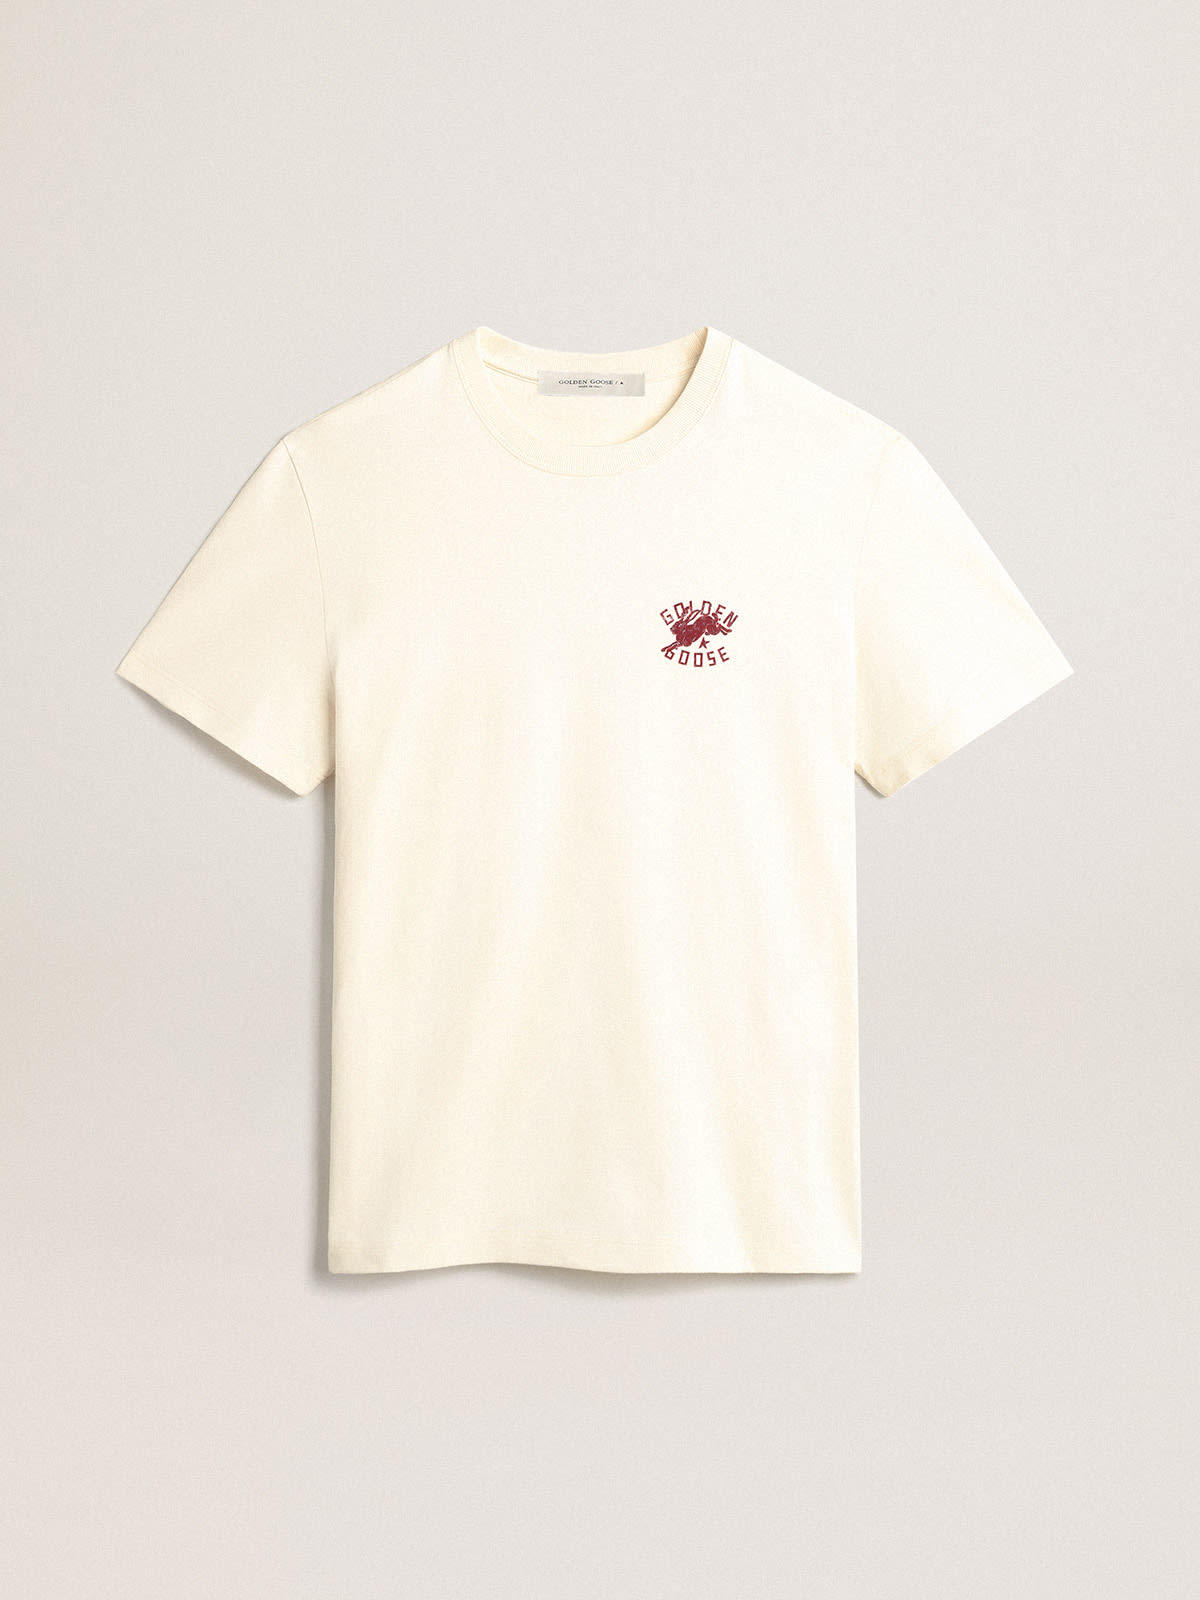 Golden Goose - T-shirt blanc caractéristique homme avec logo CNY in 